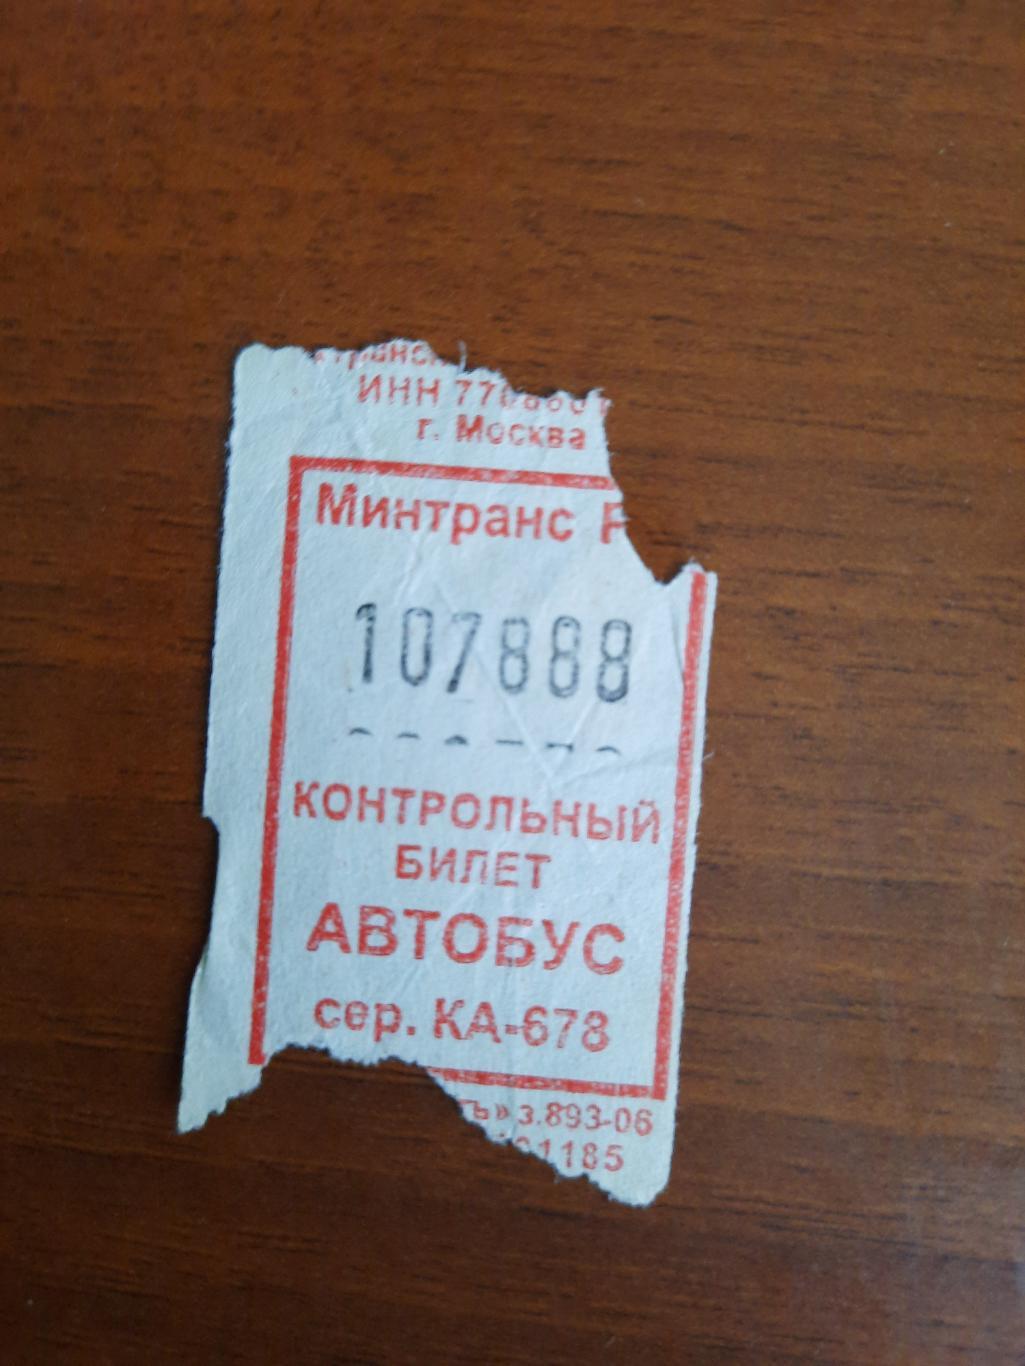 Автобусный билет с интересным номером 107888